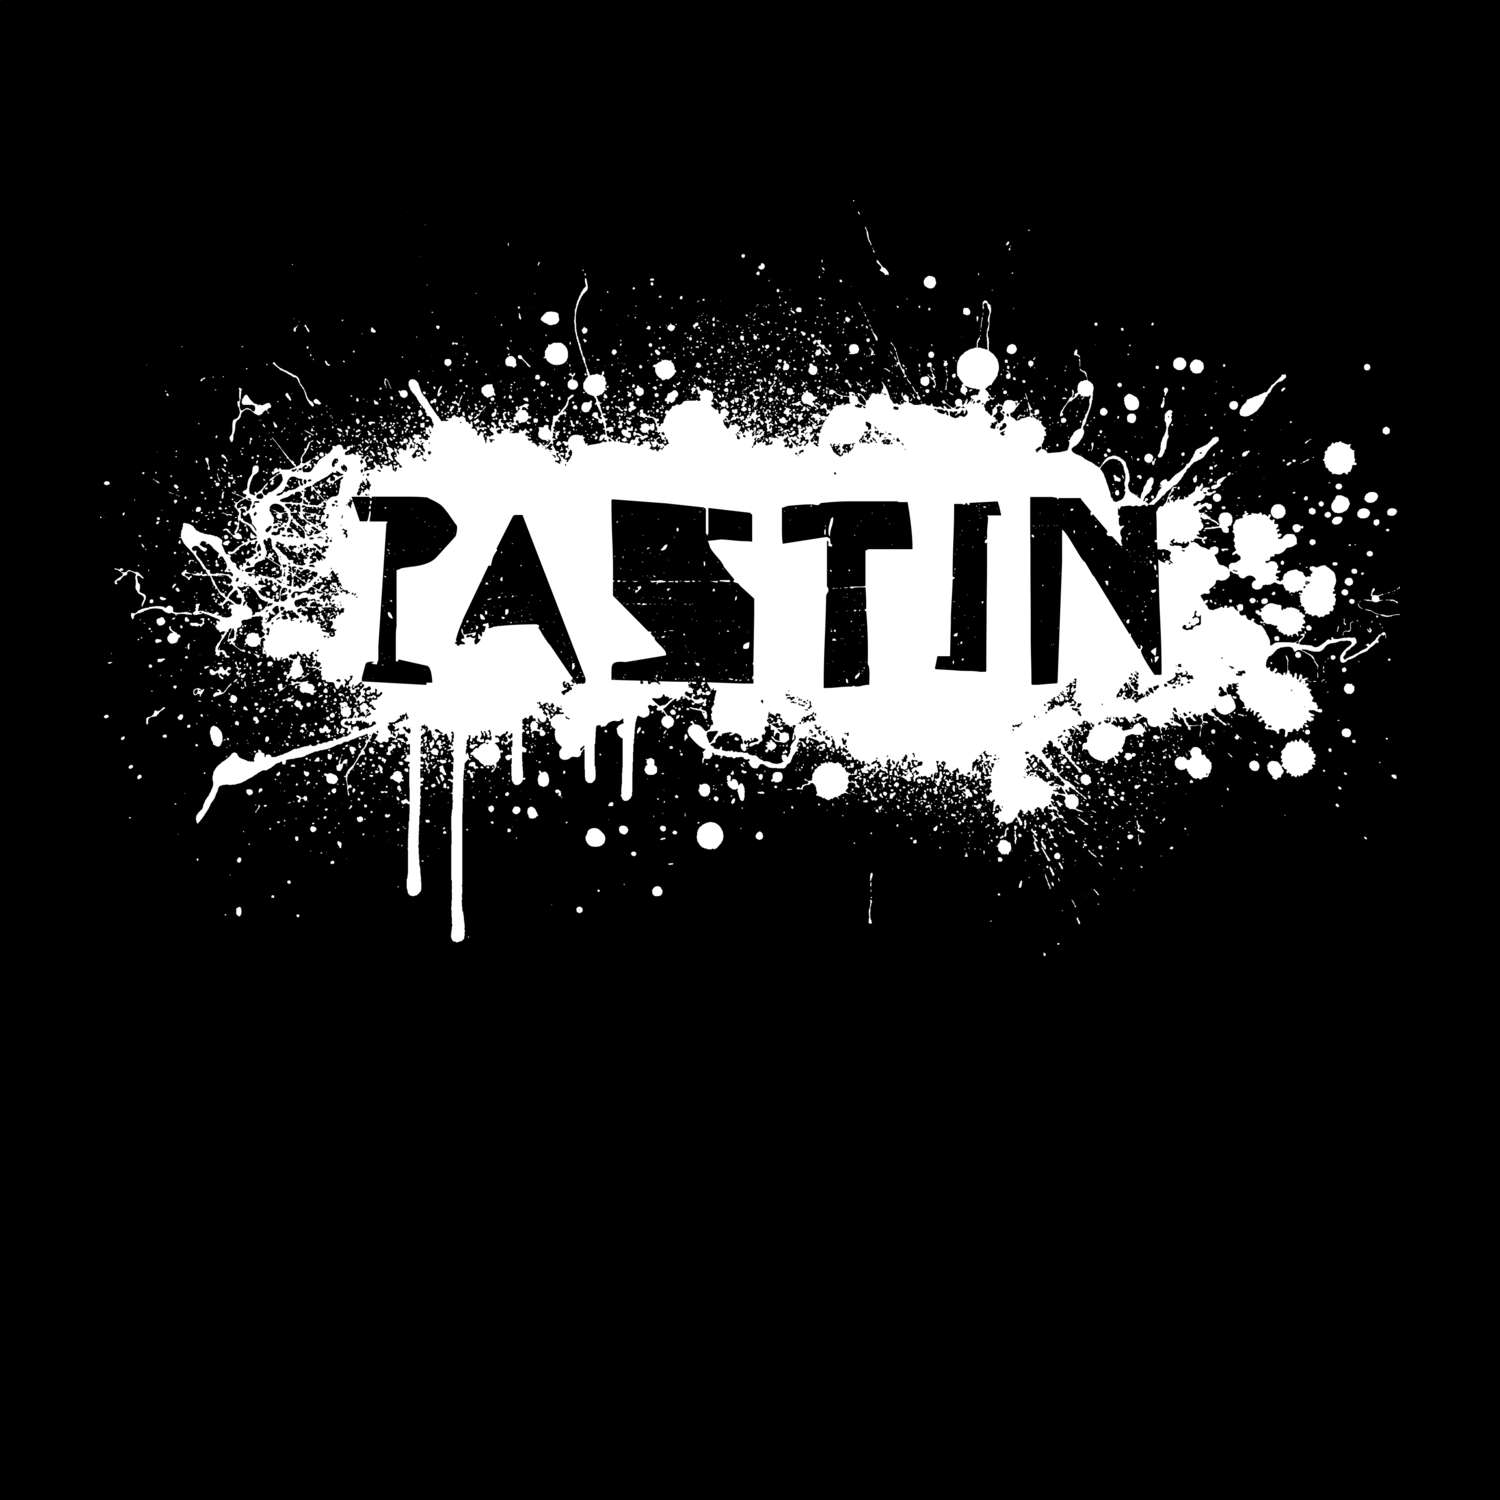 Pastin T-Shirt »Paint Splash Punk«